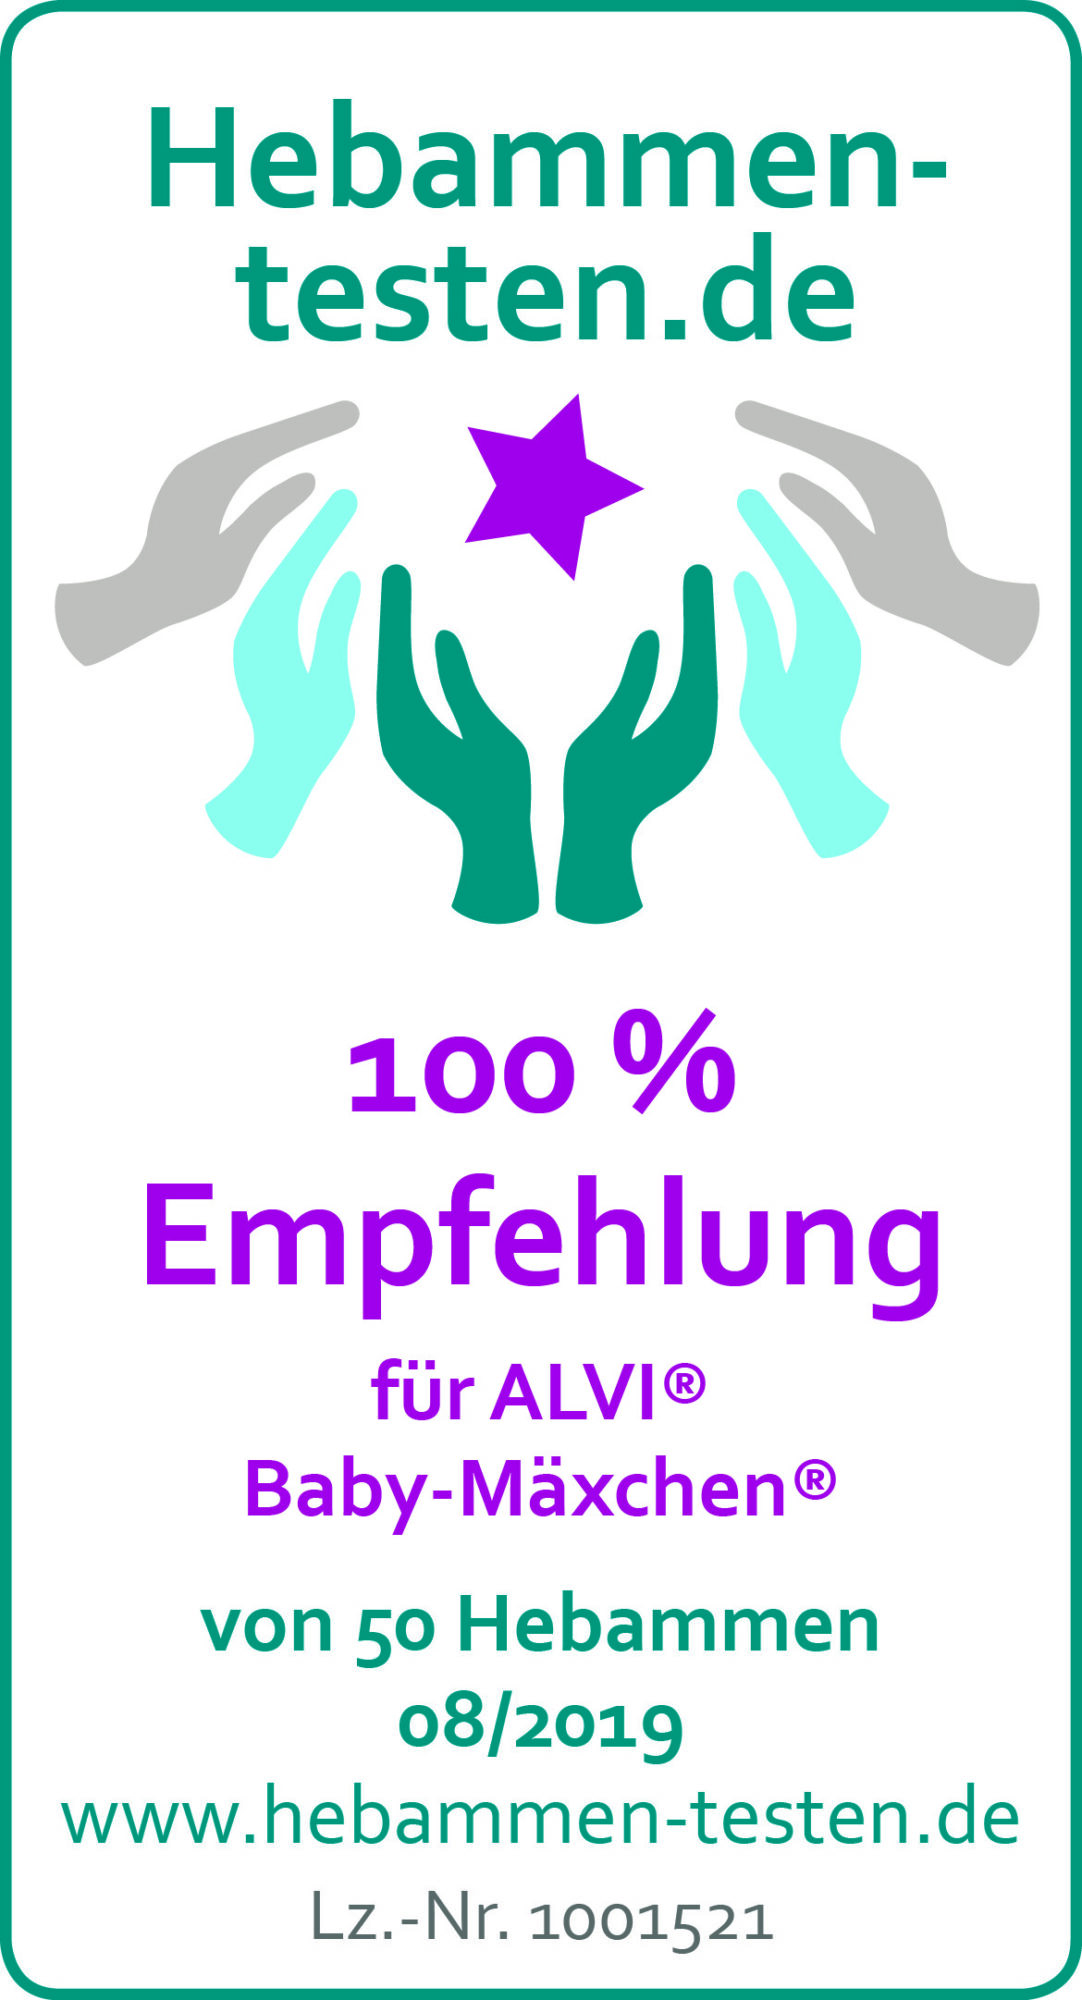 Hebammen-testen.de Siegel für ALVI Baby-Mäxchen 100 % Empfehlung von 50 Hebammen im August 2018 getestet.